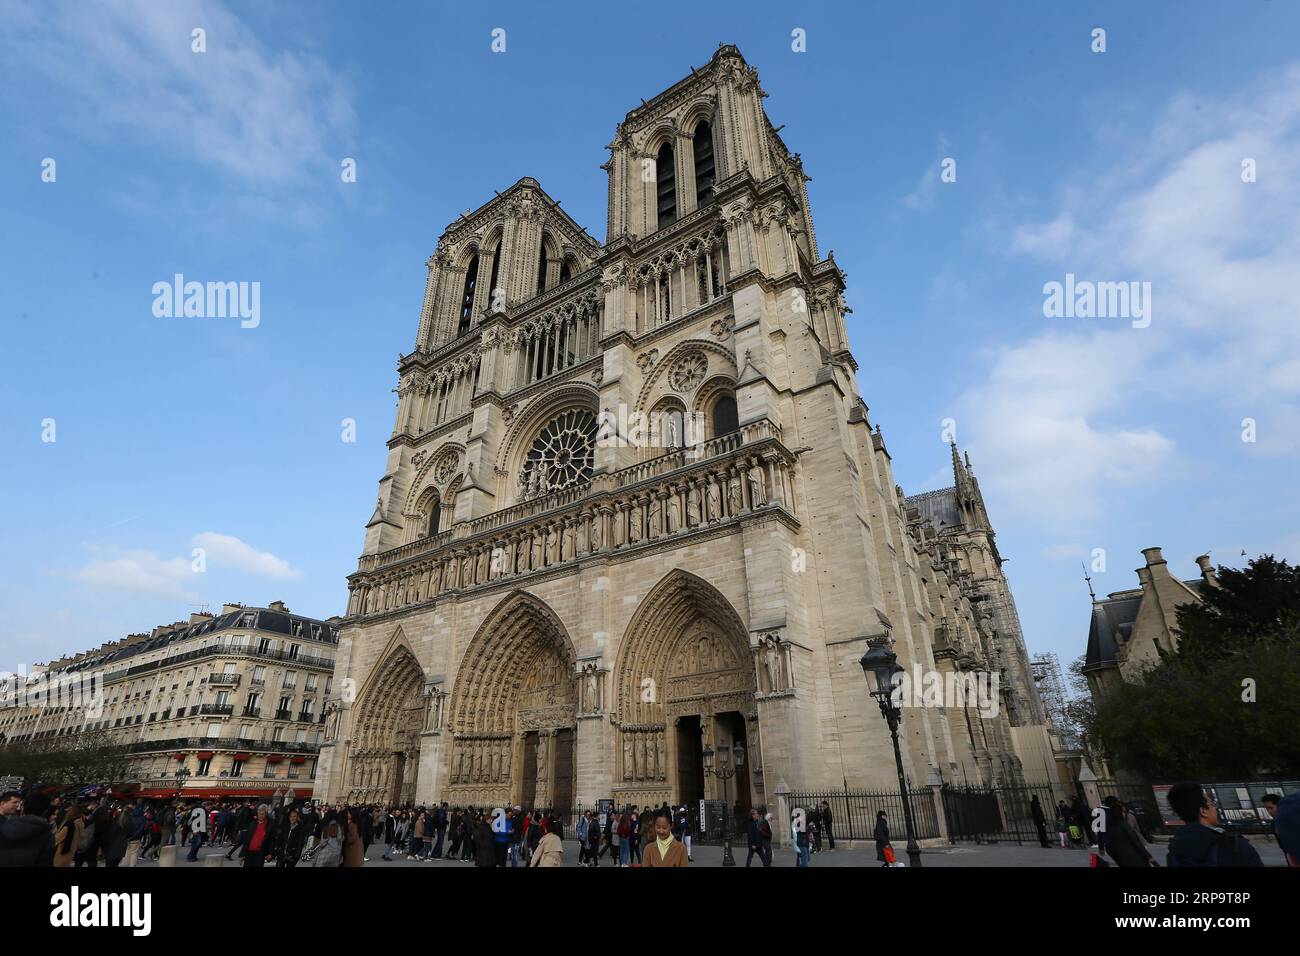 (190416) -- PARIS, 16. April 2019 (Xinhua) -- Aktenfoto vom 23. März 2019 zeigt das Äußere der Kathedrale Notre Dame in Paris, Frankreich. Das verheerende Feuer in der Kathedrale Notre Dame im Zentrum von Paris wurde nach 15 Stunden Brand ausgelöscht, berichteten lokale Medien am 16. April 2019. Am frühen Abend des 15. April brach in der berühmten Kathedrale ein Feuer aus. Online-Aufnahmen zeigten dicken Rauch, der von der Spitze der Kathedrale wehte, und riesige Flammen zwischen ihren beiden Glockentürmen, die den Turm und das gesamte Dach umschlossen, die beide später zusammenbrachen. Notre Dame gilt als eines der besten Beispiele Stockfoto